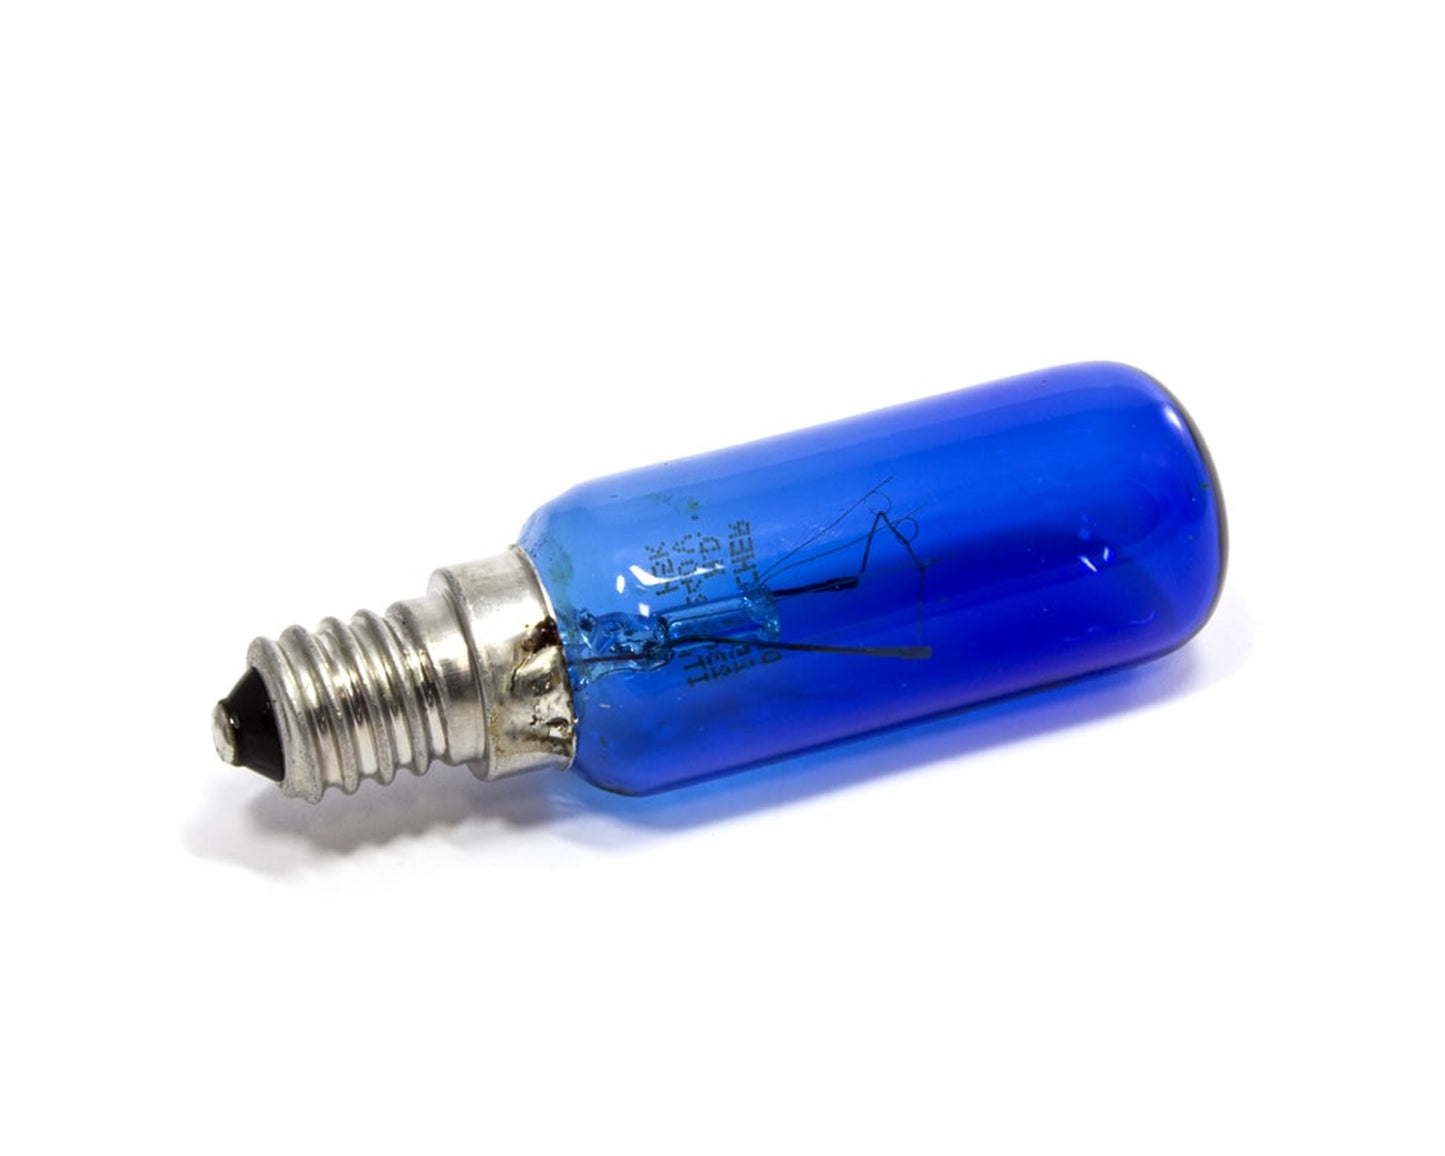 Genuine Dr Fischer Bosch Neff Siemens Refrigeration Fridge Freezer Blue 'Daylight' Lamp bulb - 612235, 00612235, ES1947690, ES1220347